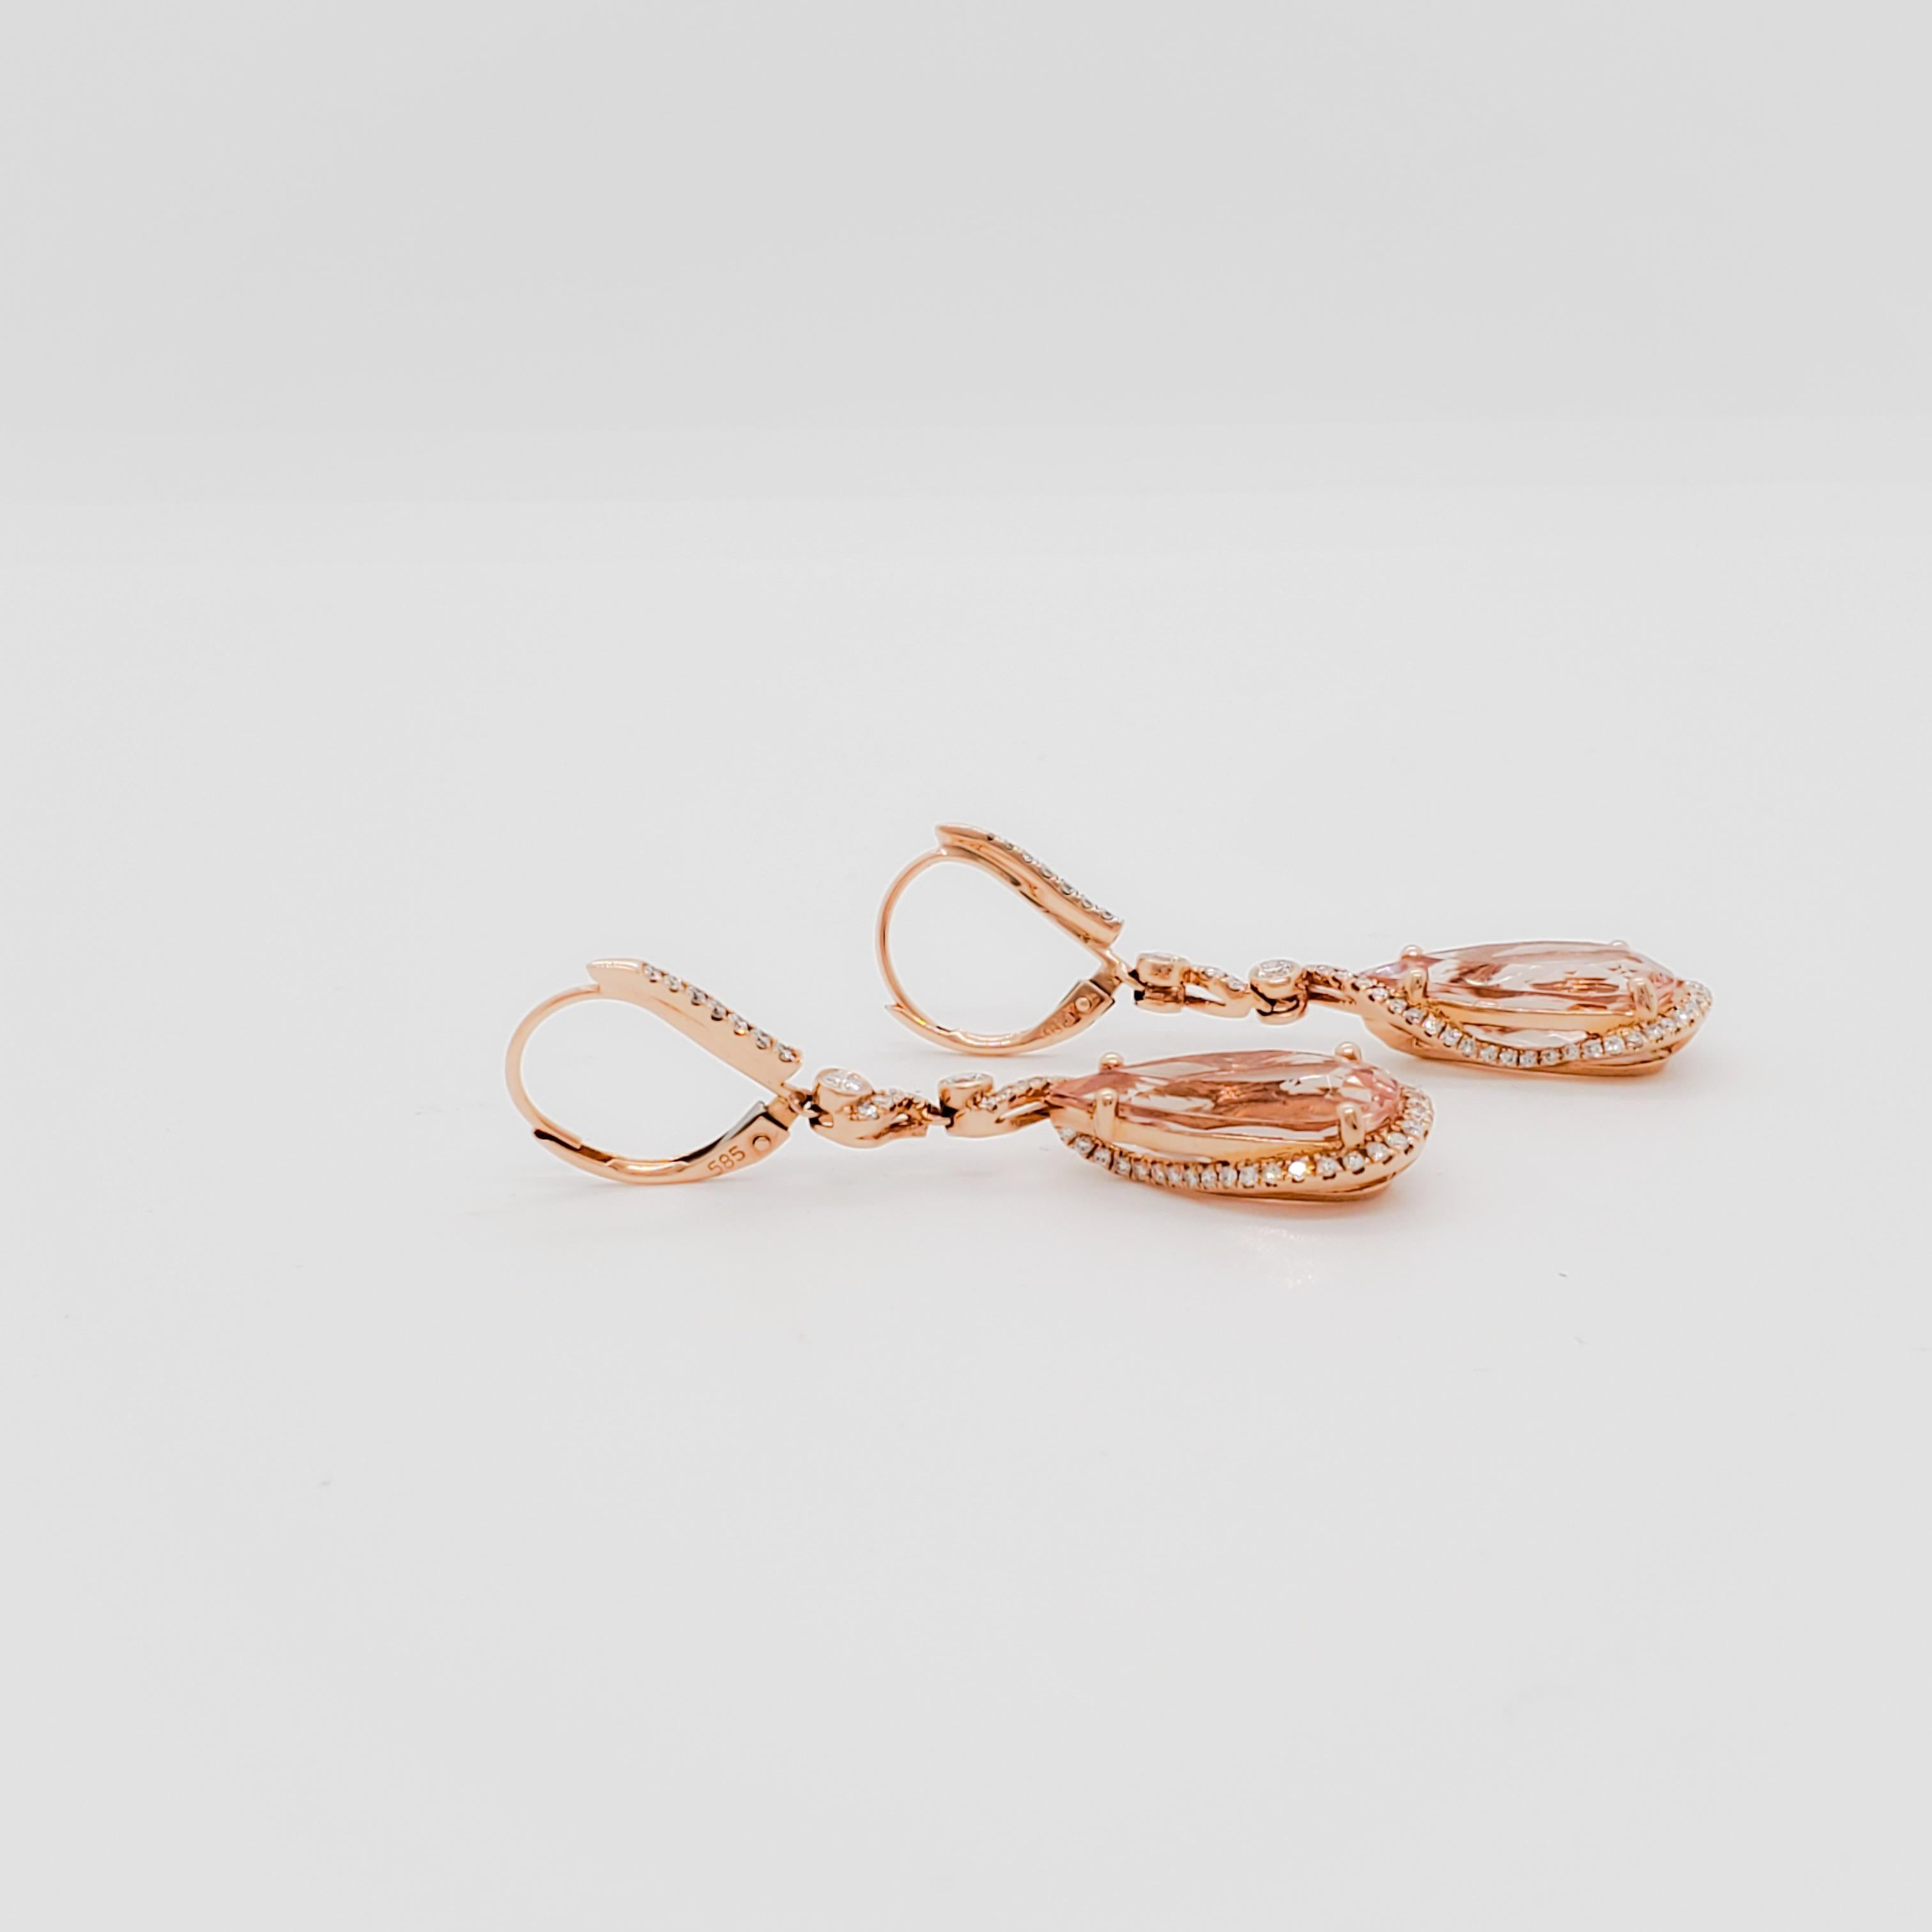 Morganite and Diamond Dangle Earrings in 14k Rose Gold 1